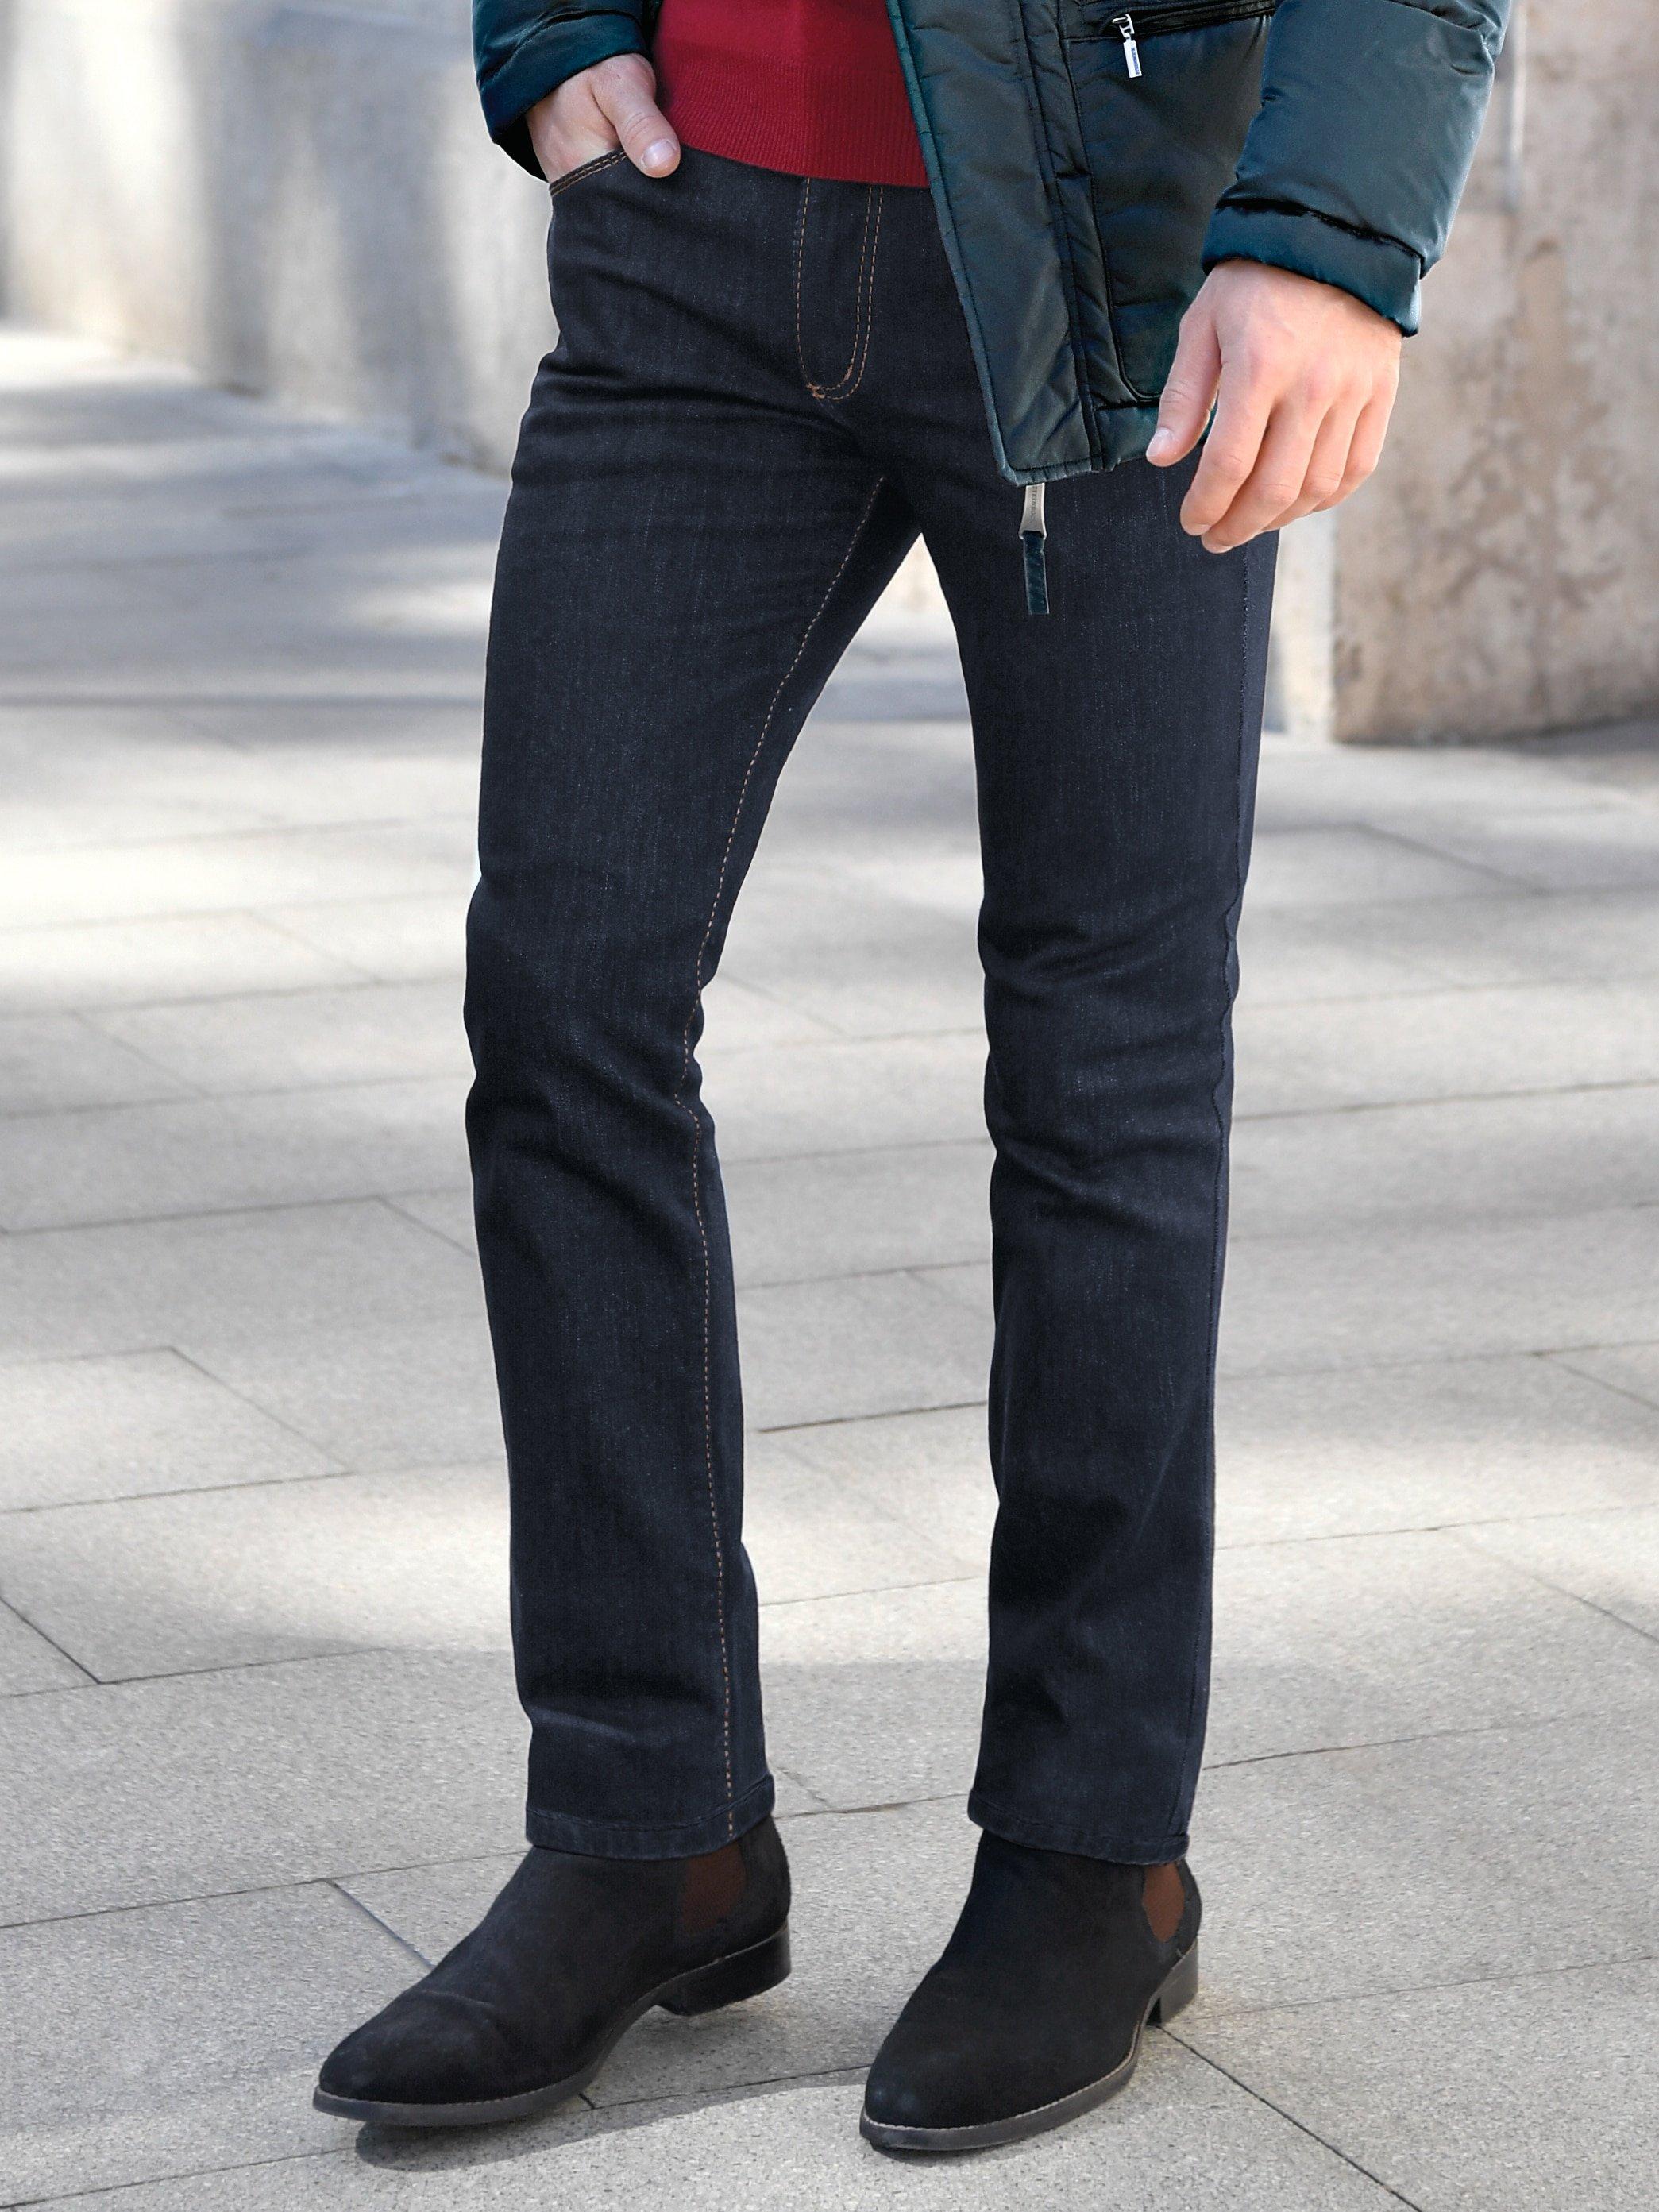 JOKER - Jeans Modell FREDDY Inch 32